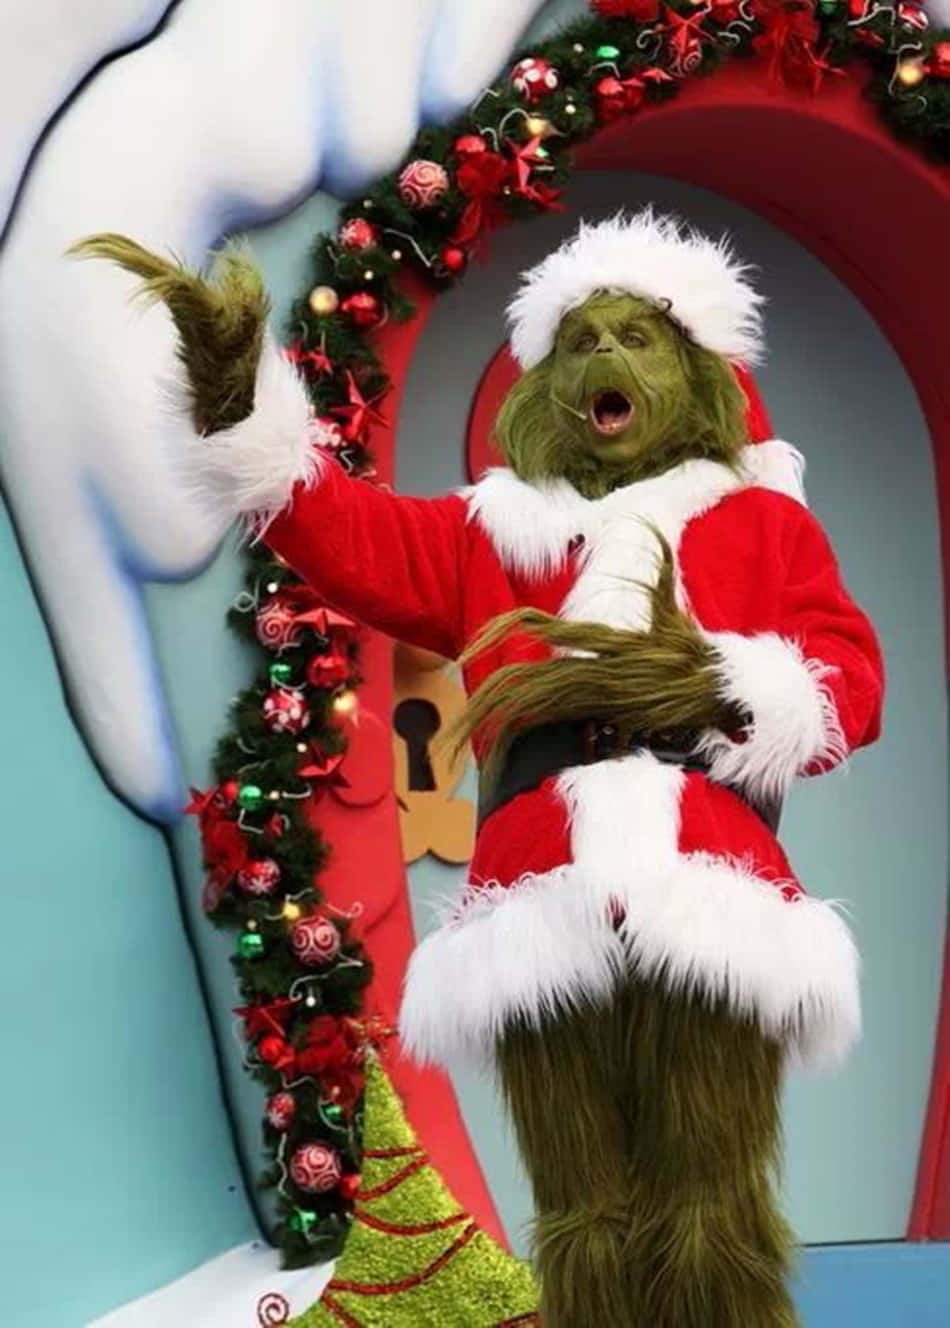 Lås den julemæsige Grinch inde i dine gaver denne jul sæson! Beskrivelse: Vis dine venner og familie, at de har en Grinch side at låse op for denne jul ved at få en speciel Grinch tema iPhone til kommende ferie! Relaterede nøgleord: Grinch jul, ferie, iPhone, gave, gaver, speciel, lås op Wallpaper